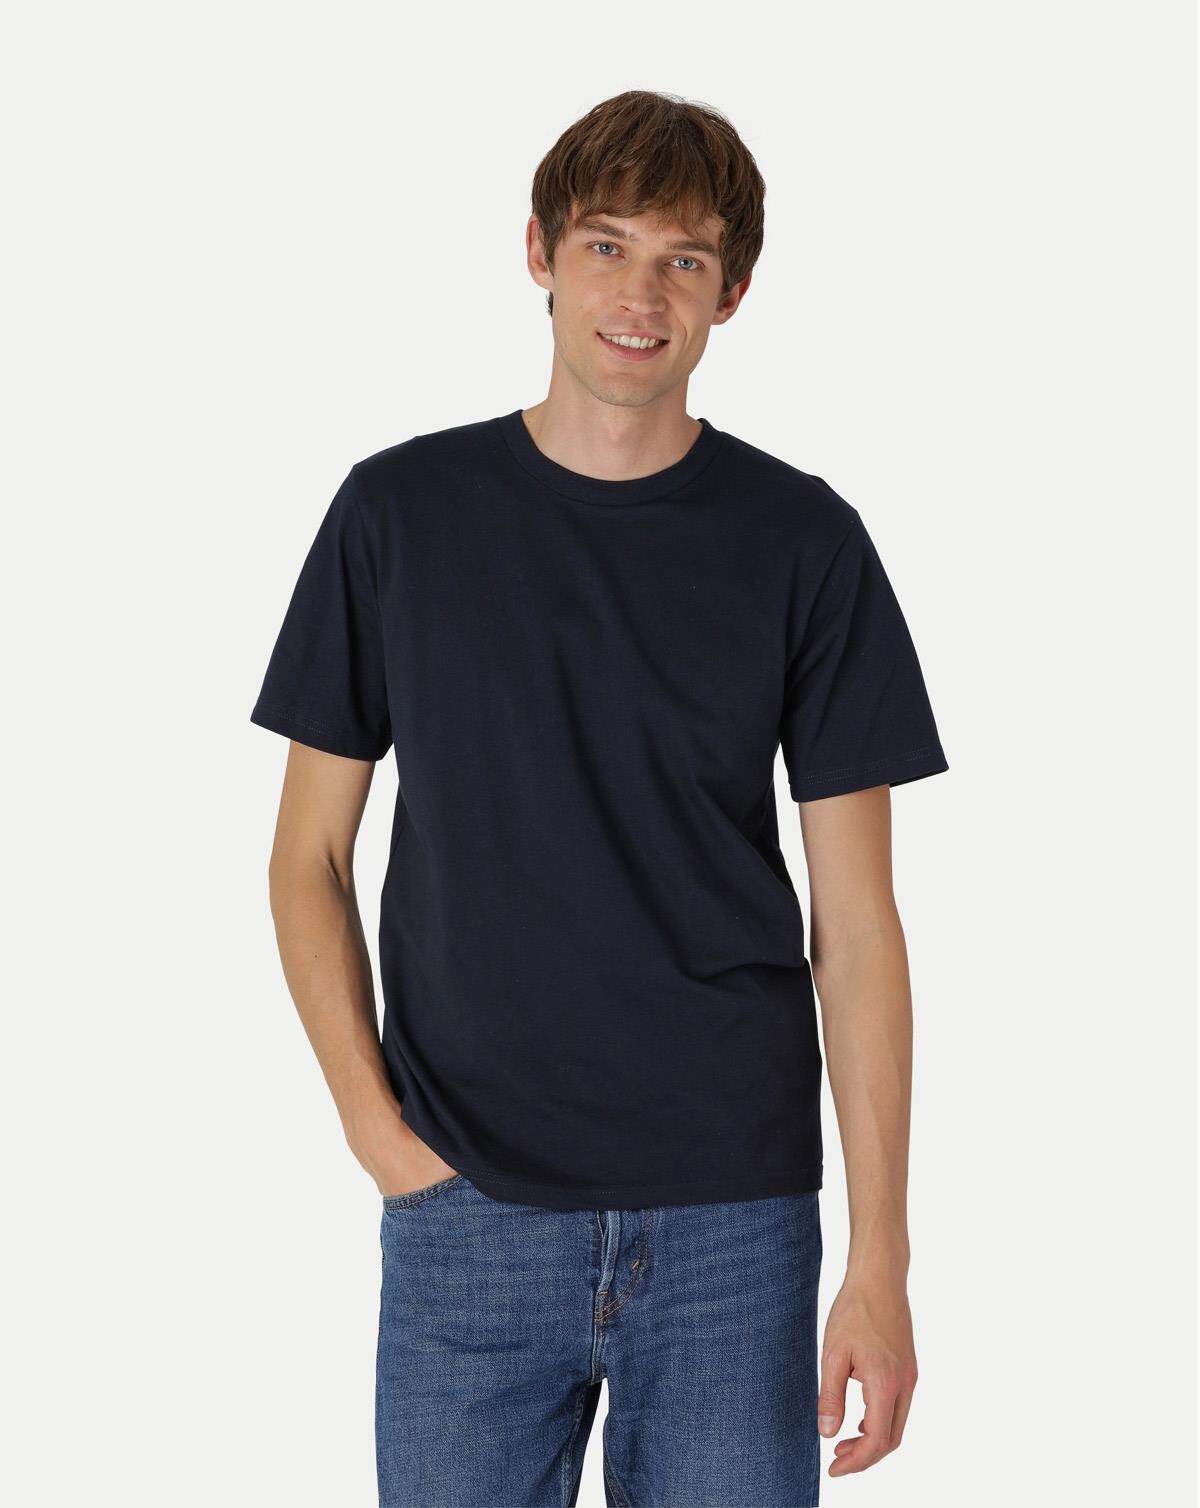 Billede af Neutral Organic - Unisex Workwear T-shirt Navy (Navy, S)